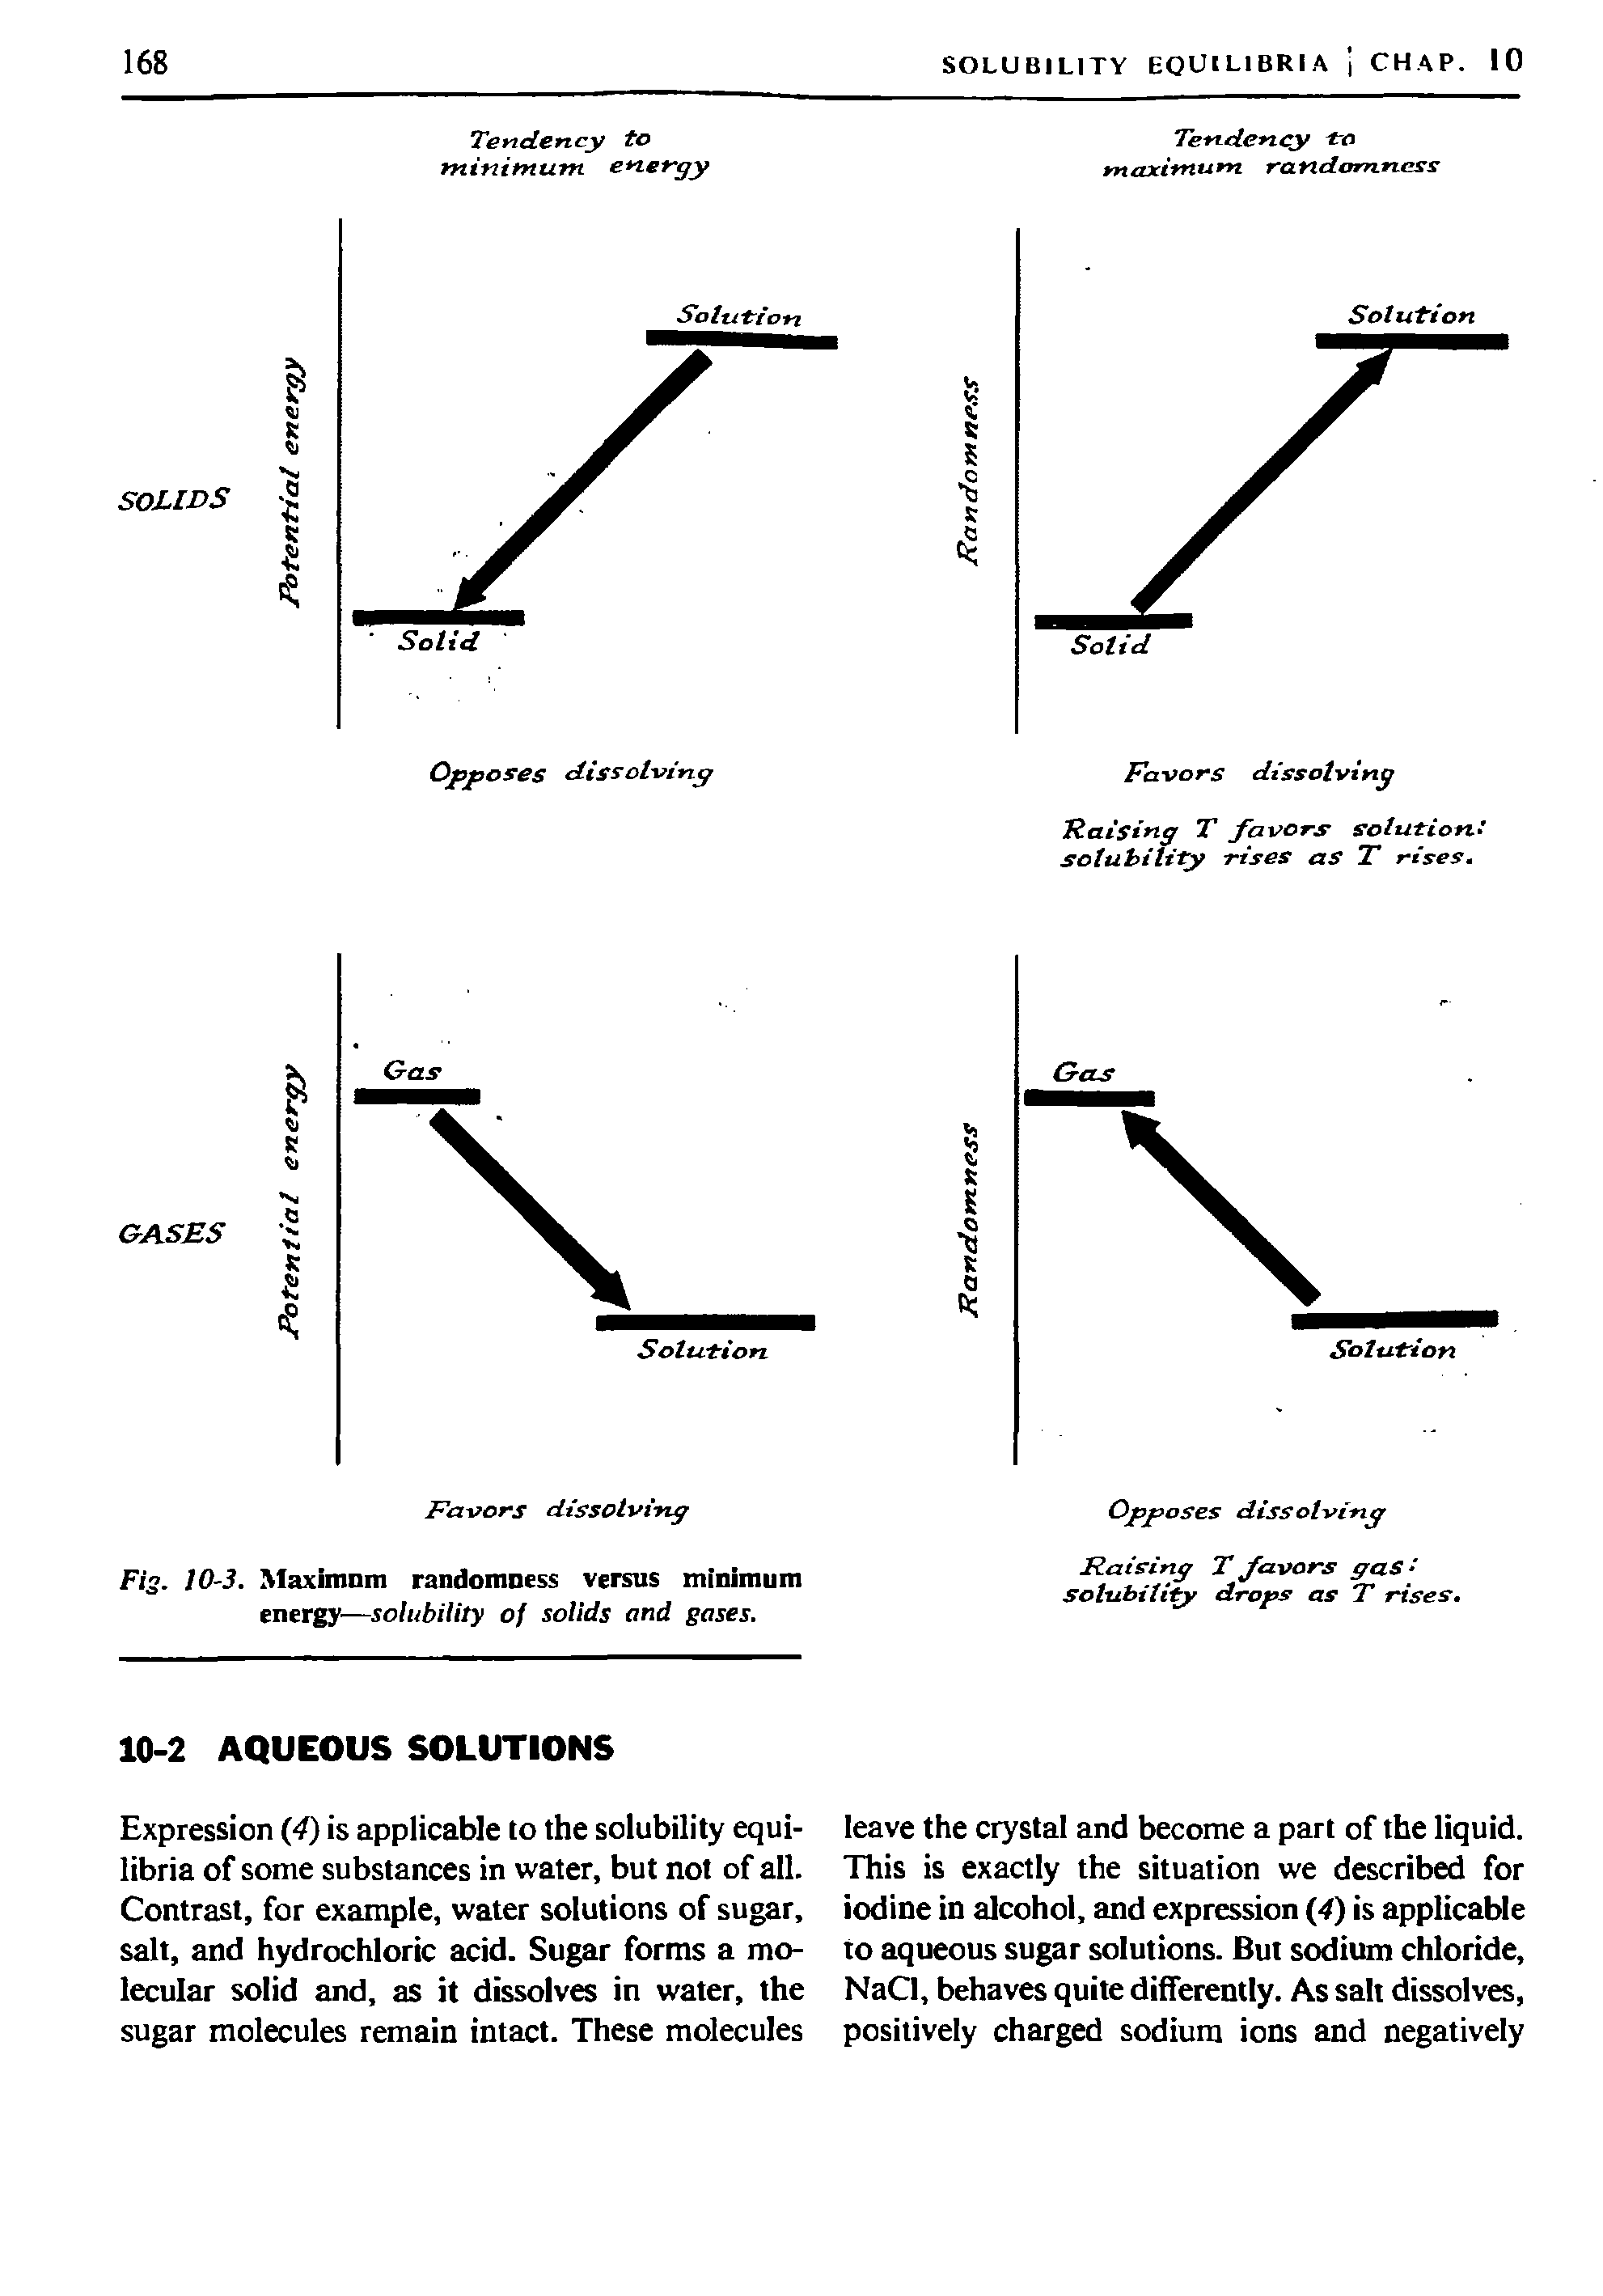 Fig. 10-3. Maximum randomness versus minimum energy—solubility of solids and gases.